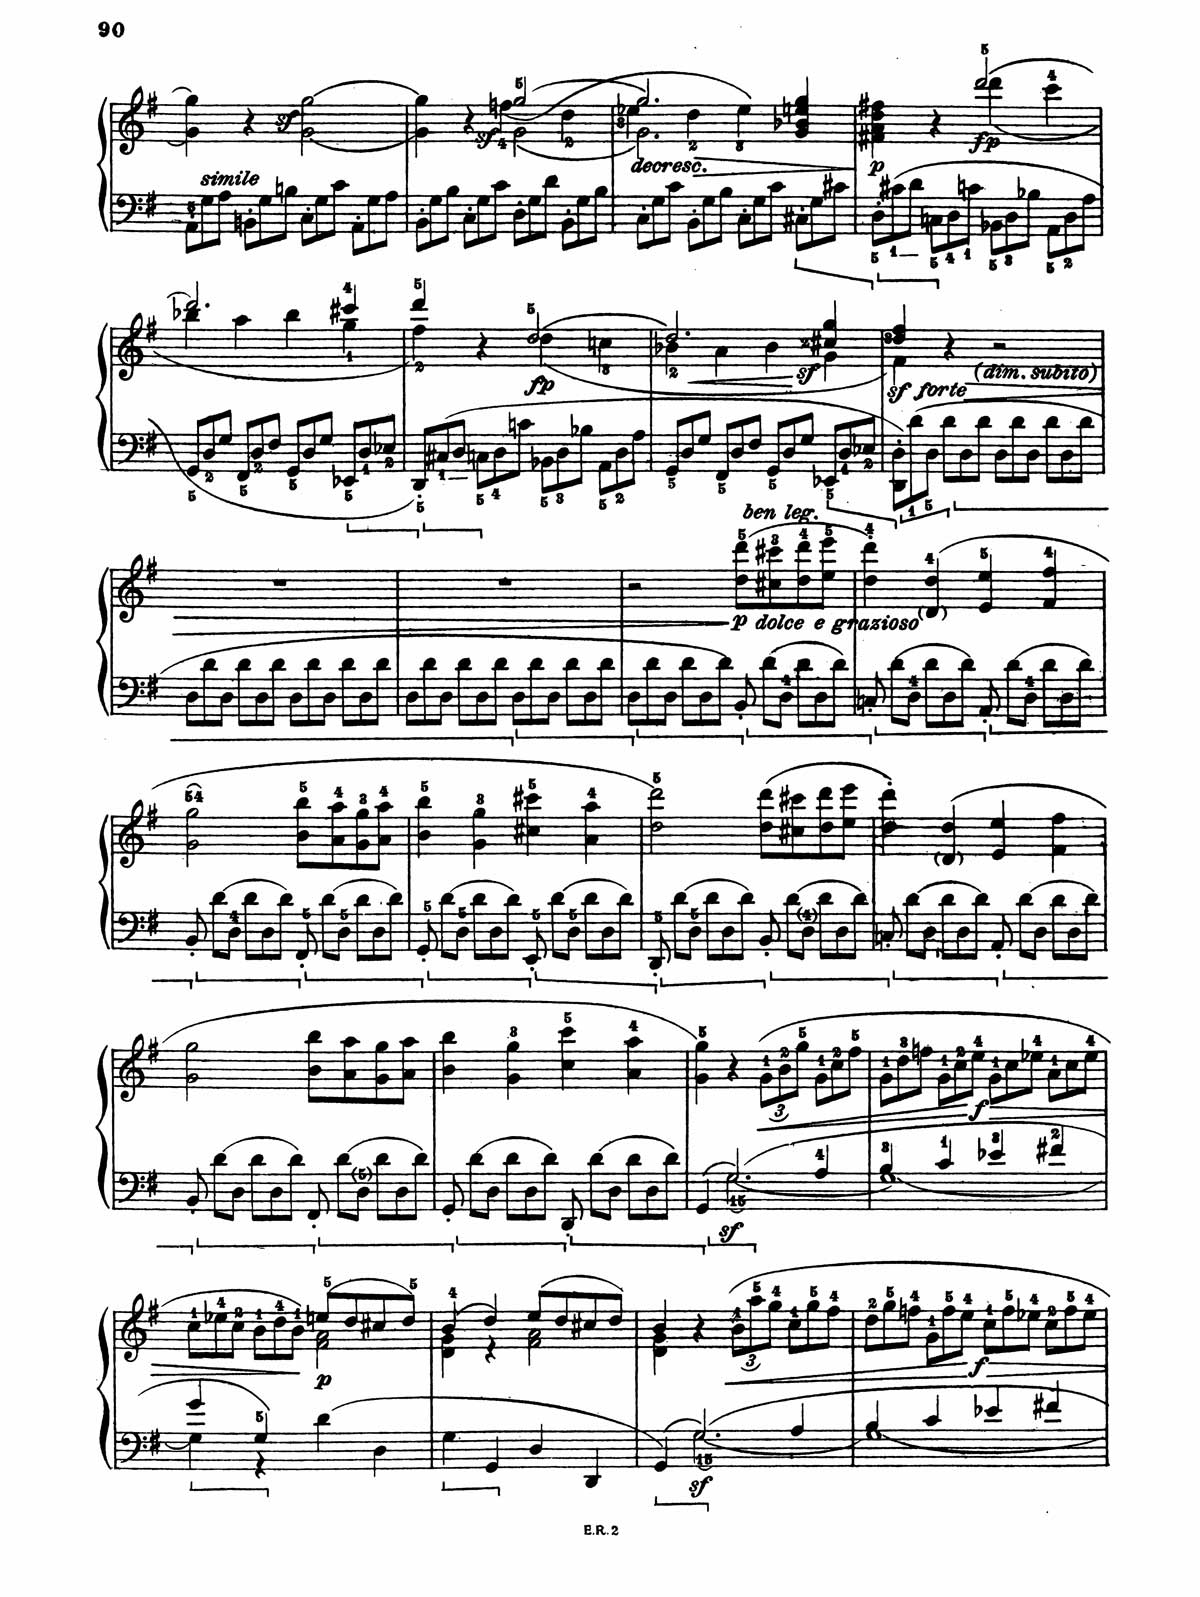 Beethoven Piano Sonata 16-27 sheet music